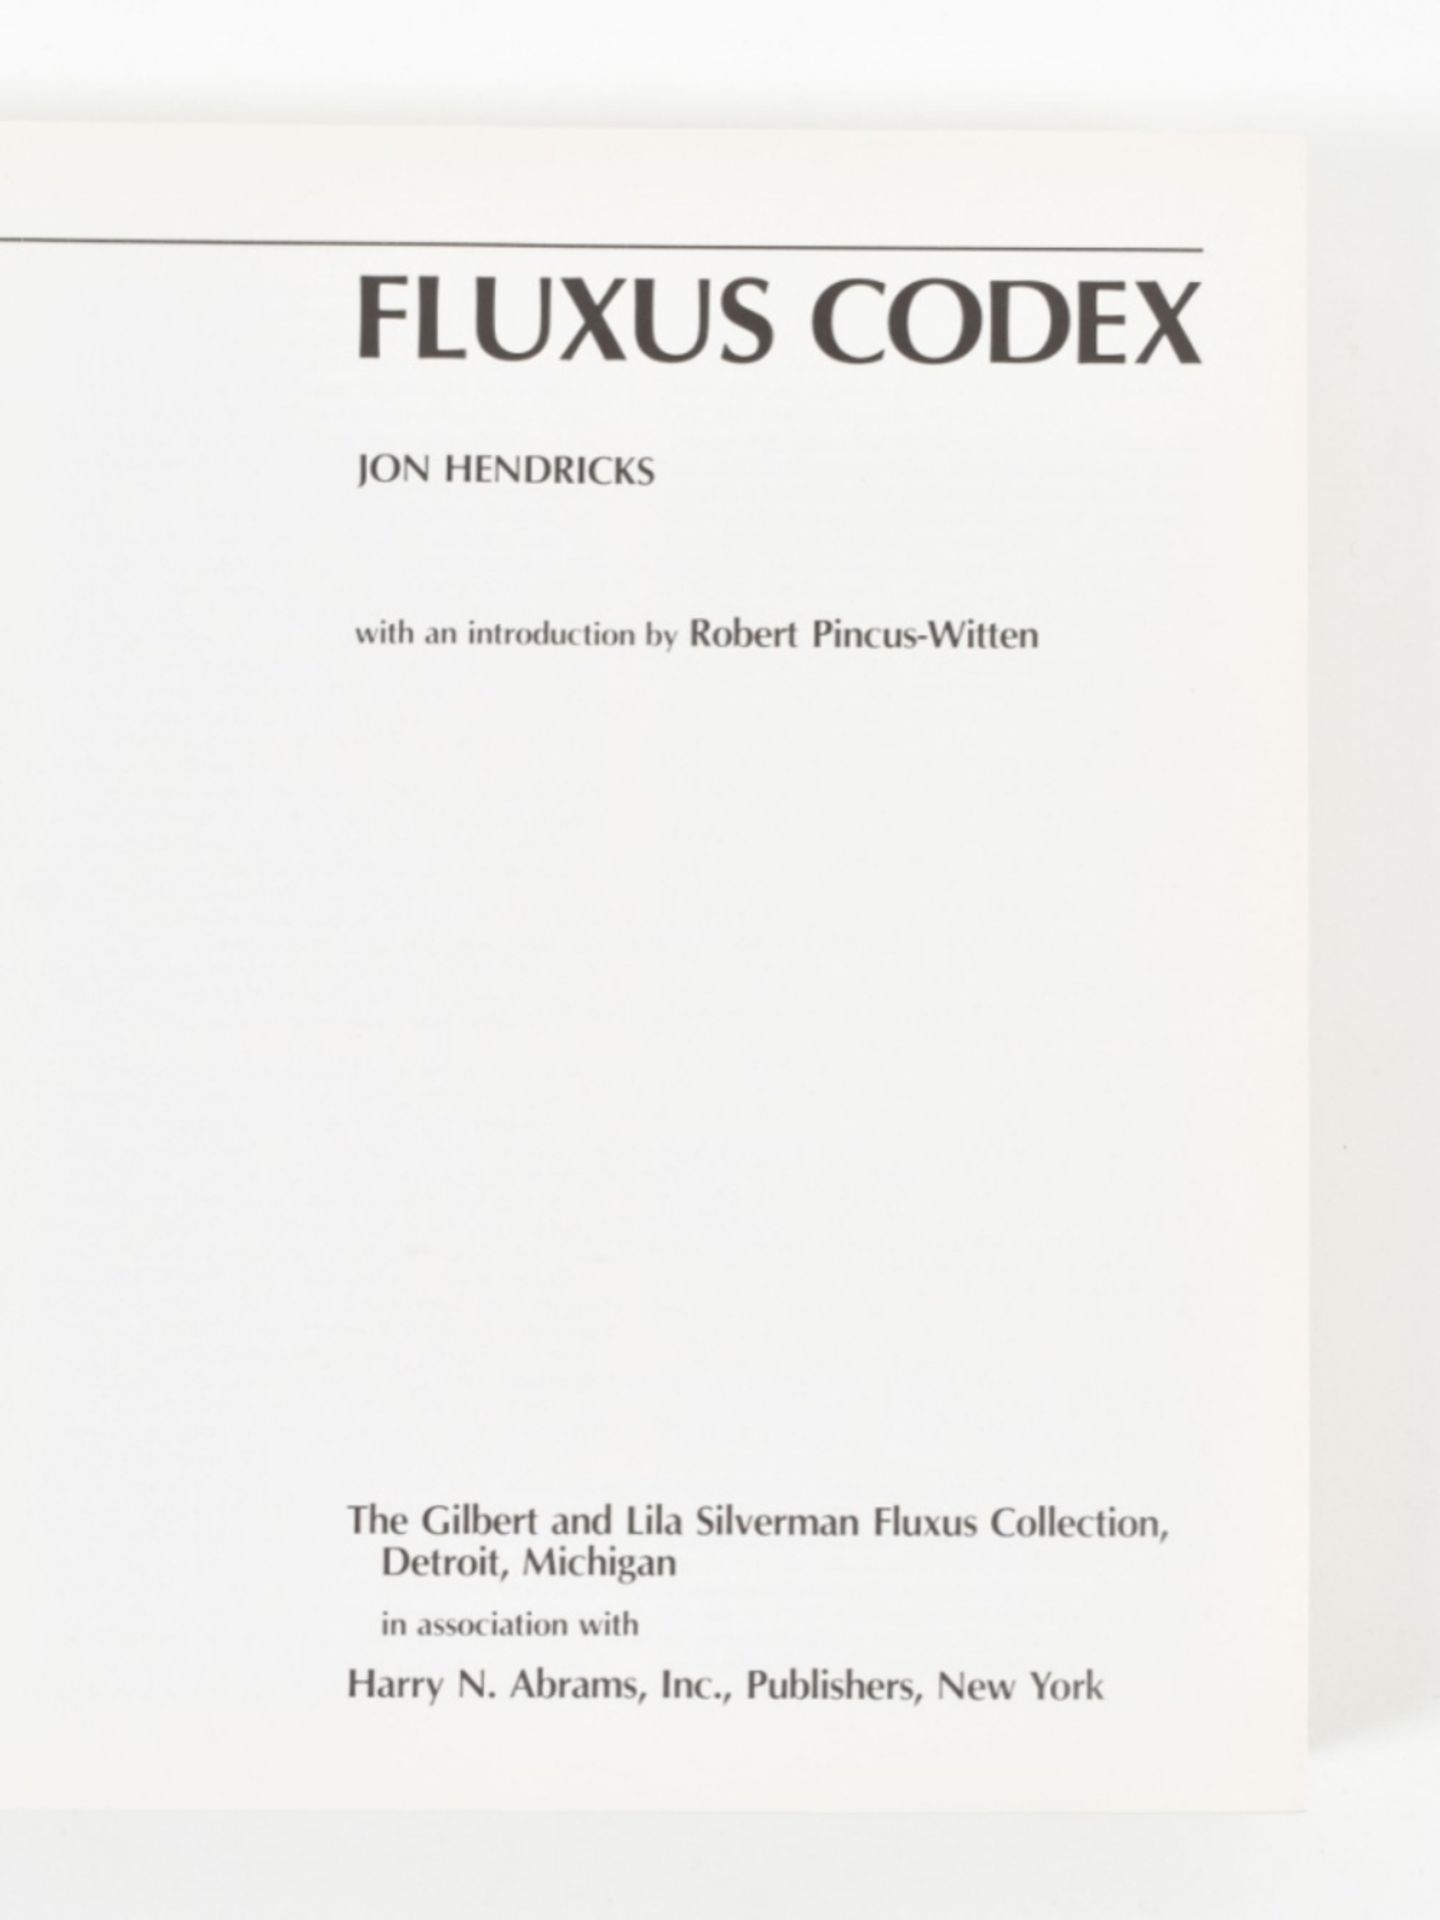 [Fluxus]  Fluxus Codex  - Image 4 of 5